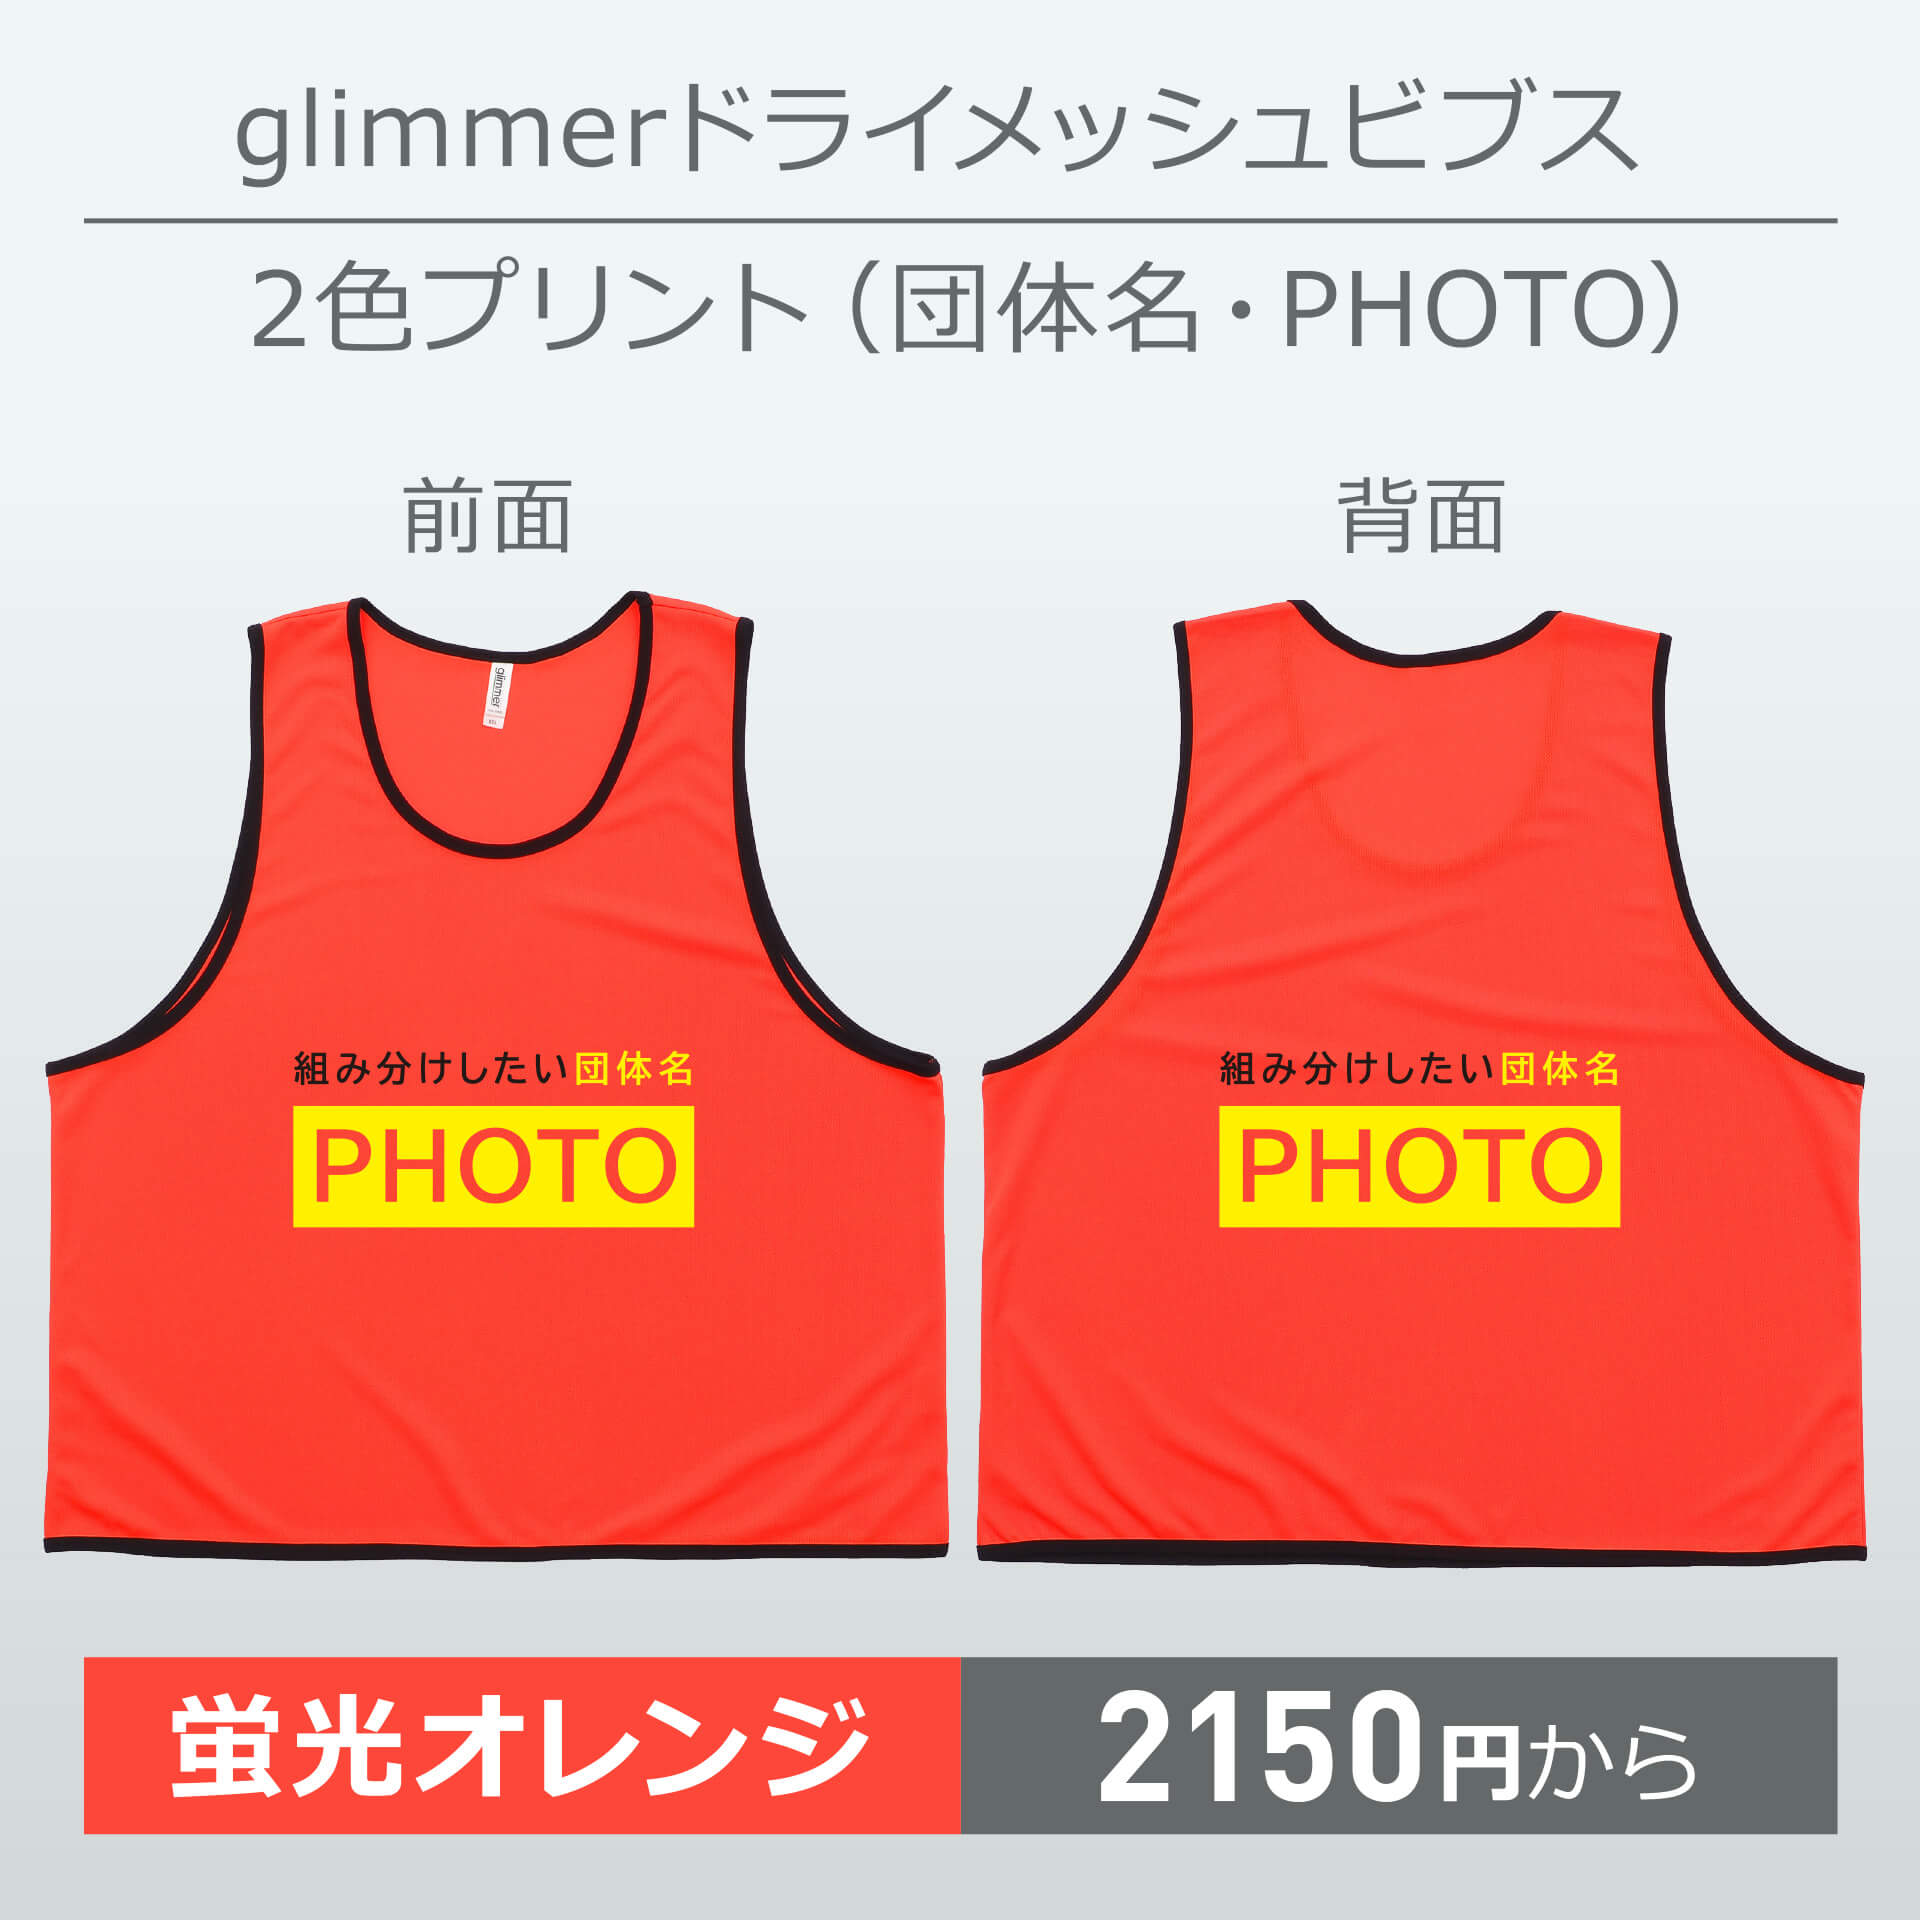 グリマー・ドライメッシュビブス・2色プリント(団体名・PHOTO)・蛍光オレンジ